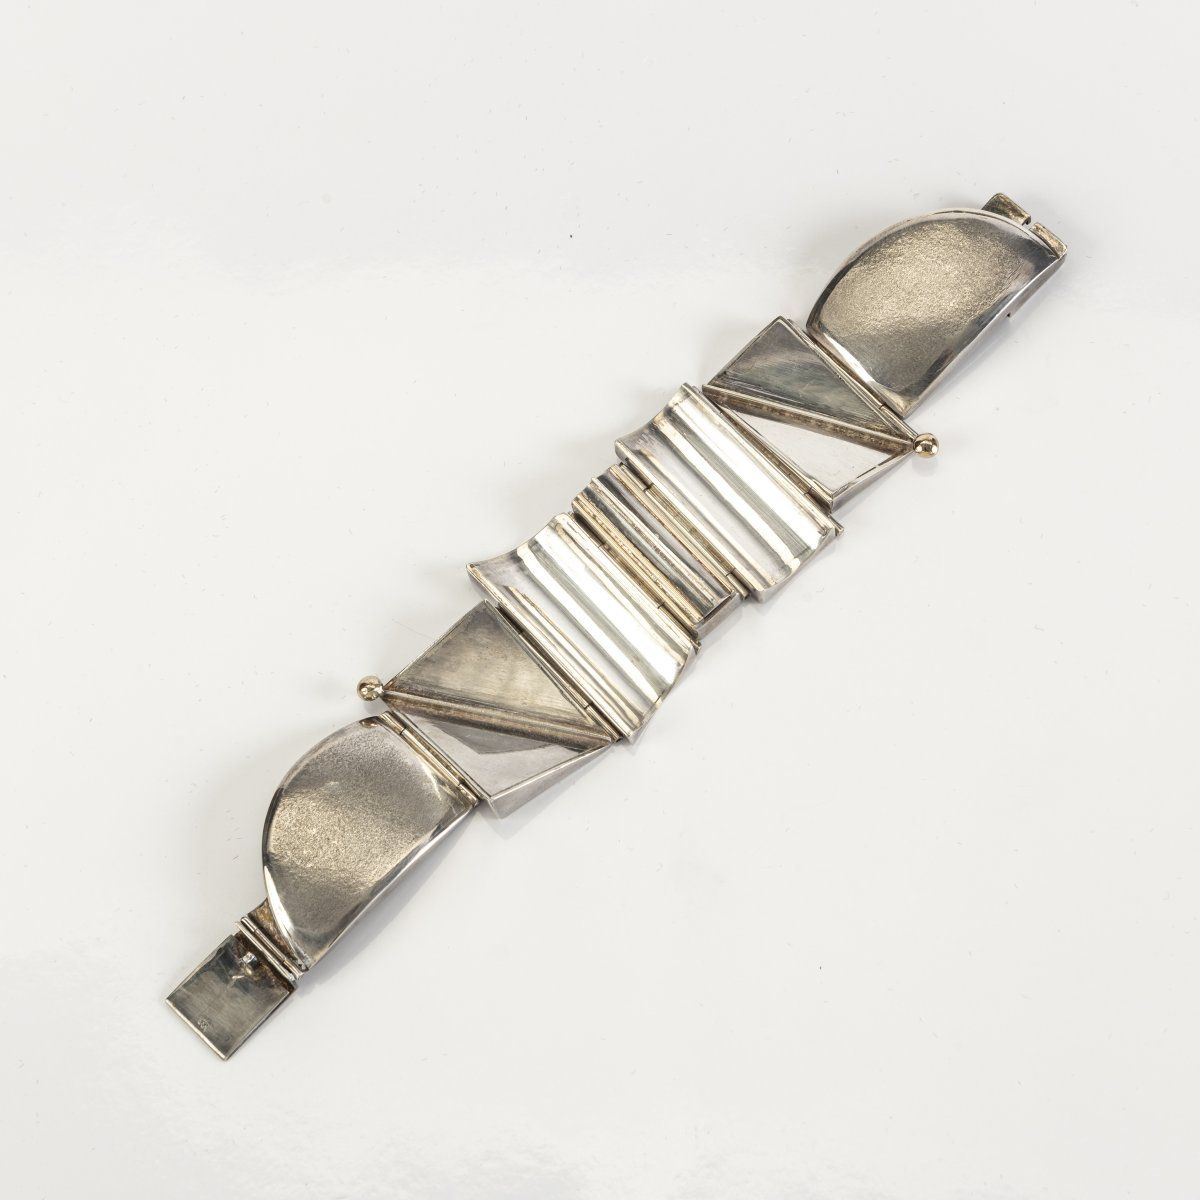 Nicos Vassilaras Armband, 1977
Silber.
99,97 Gramm. L. 195 mm. 
Bez.: Vassilaras&hellip;